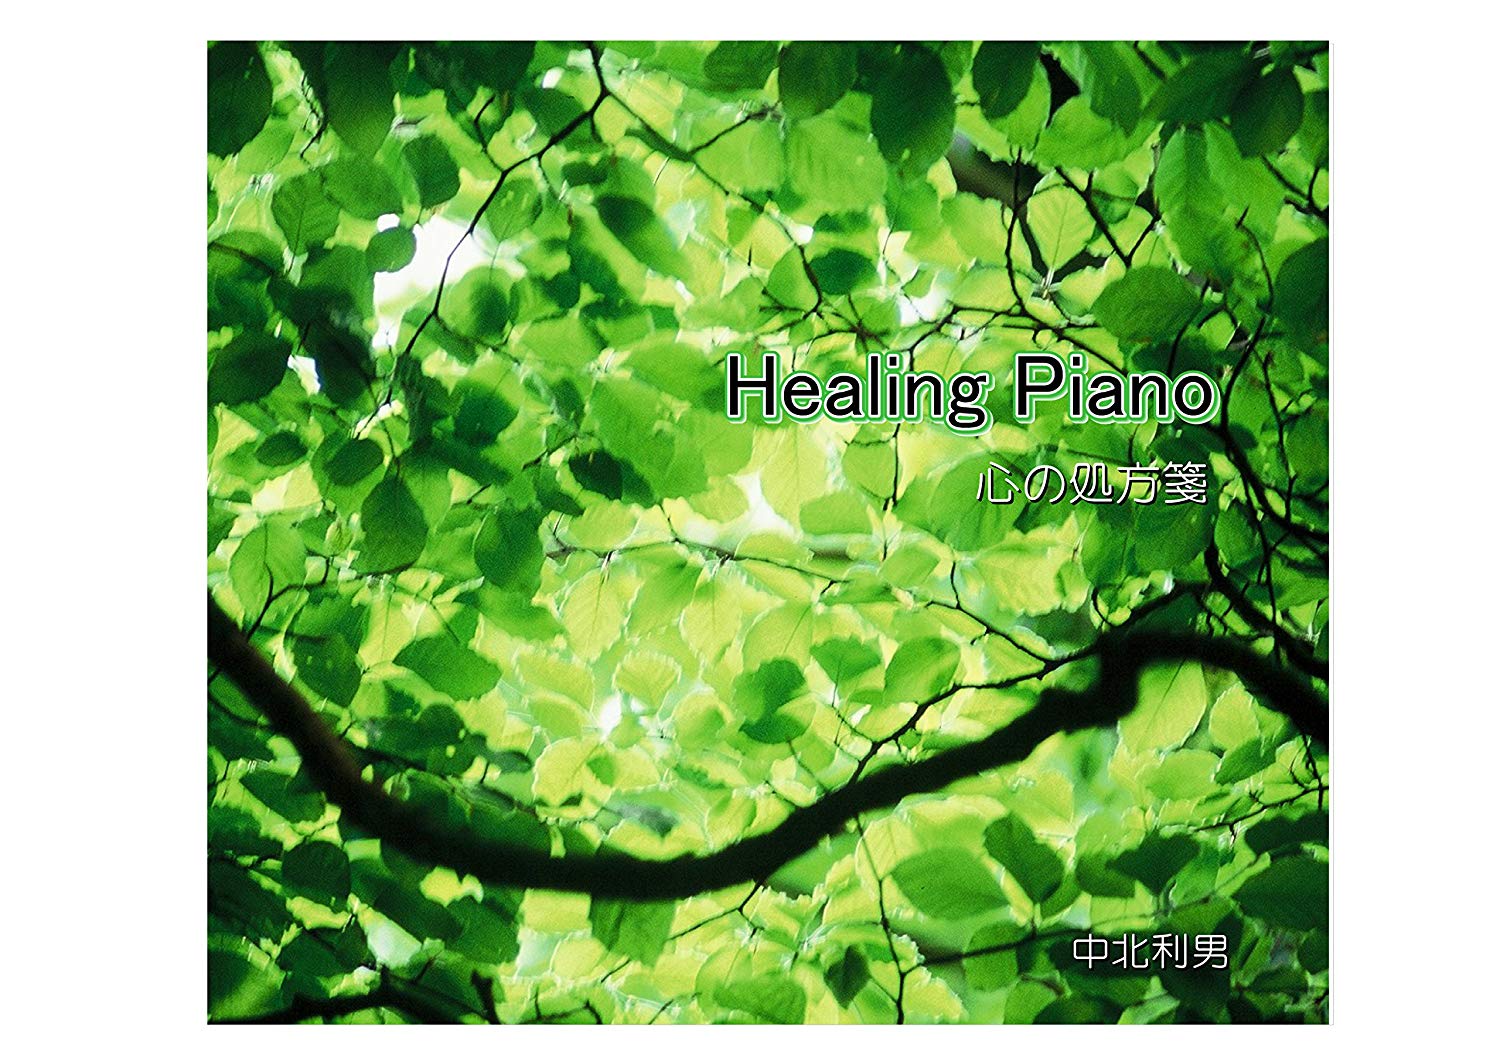 Healing Piano 豪華な 自律神経にやさしい心の処方箋 著作権フリー ヒーリングピアノ メーカー在庫限り品